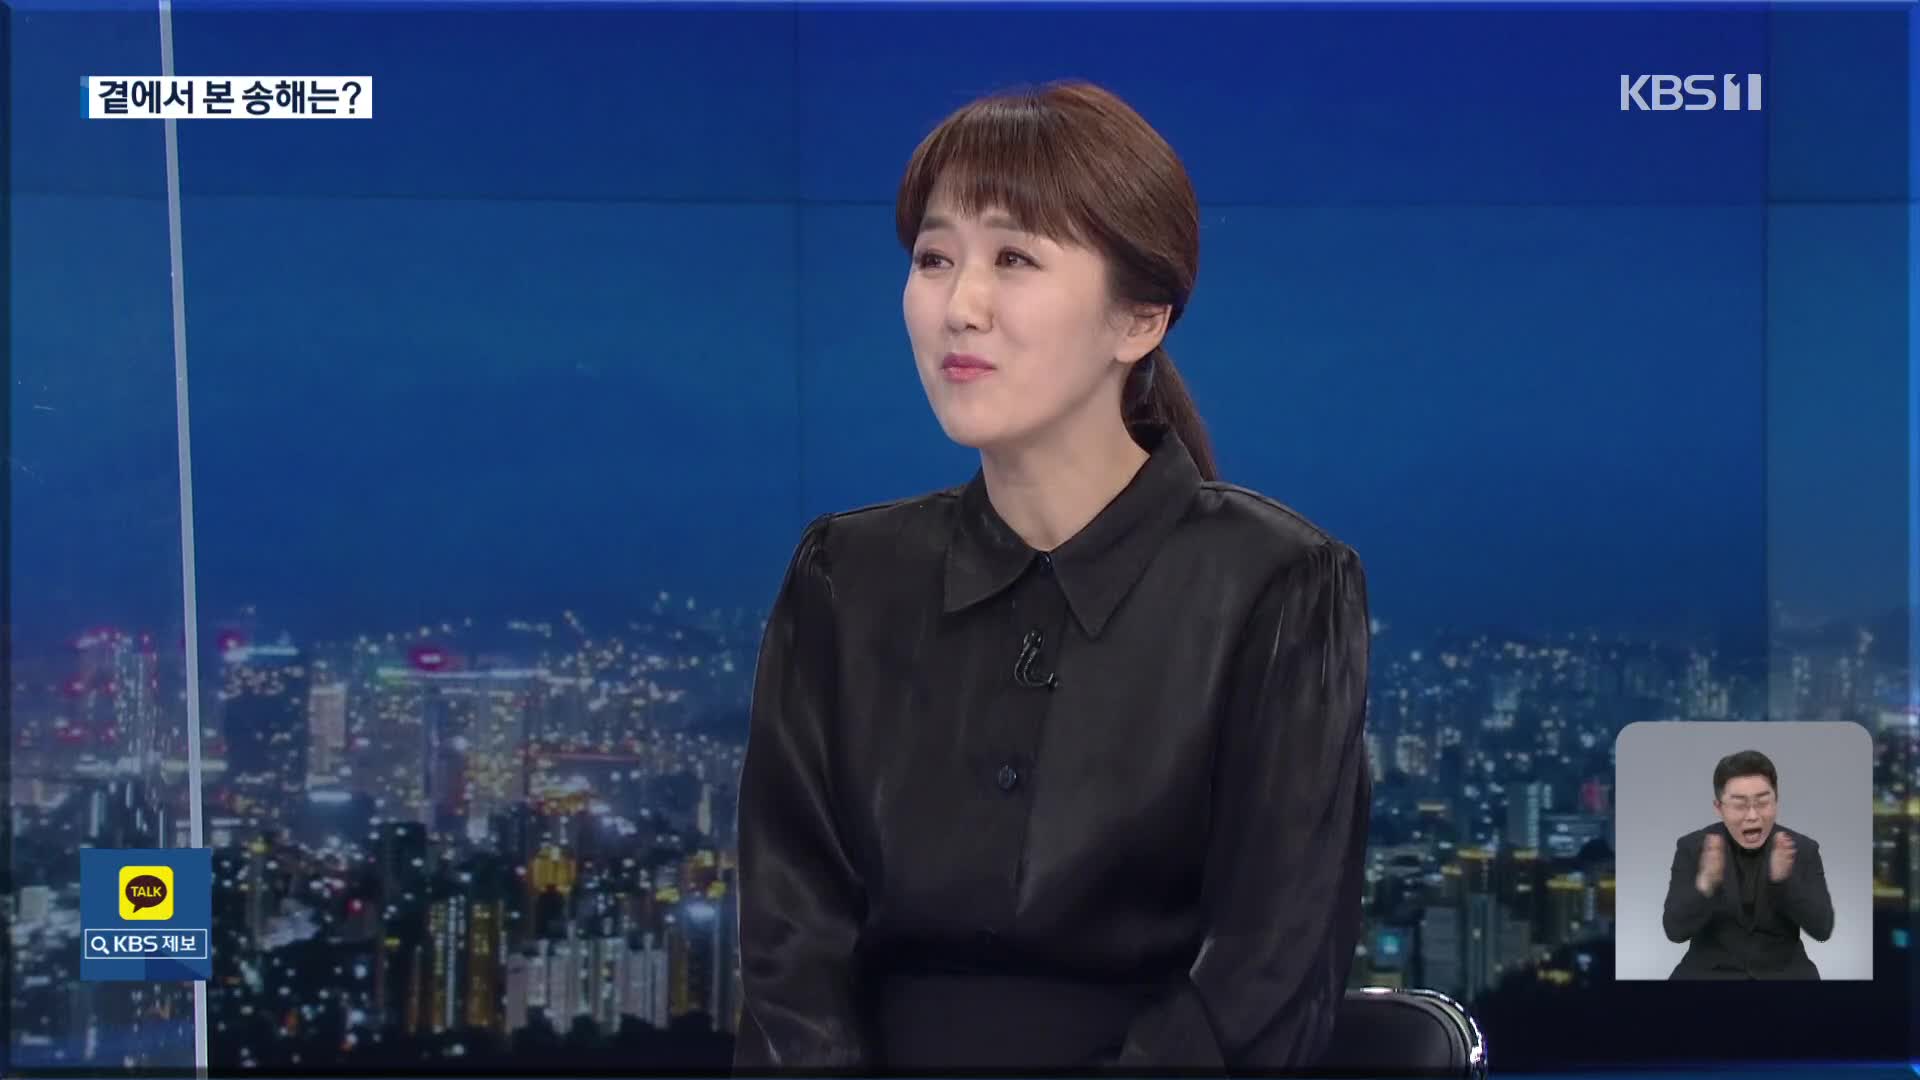 [인터뷰] 임수민 아나운서가 본 송해 선생님